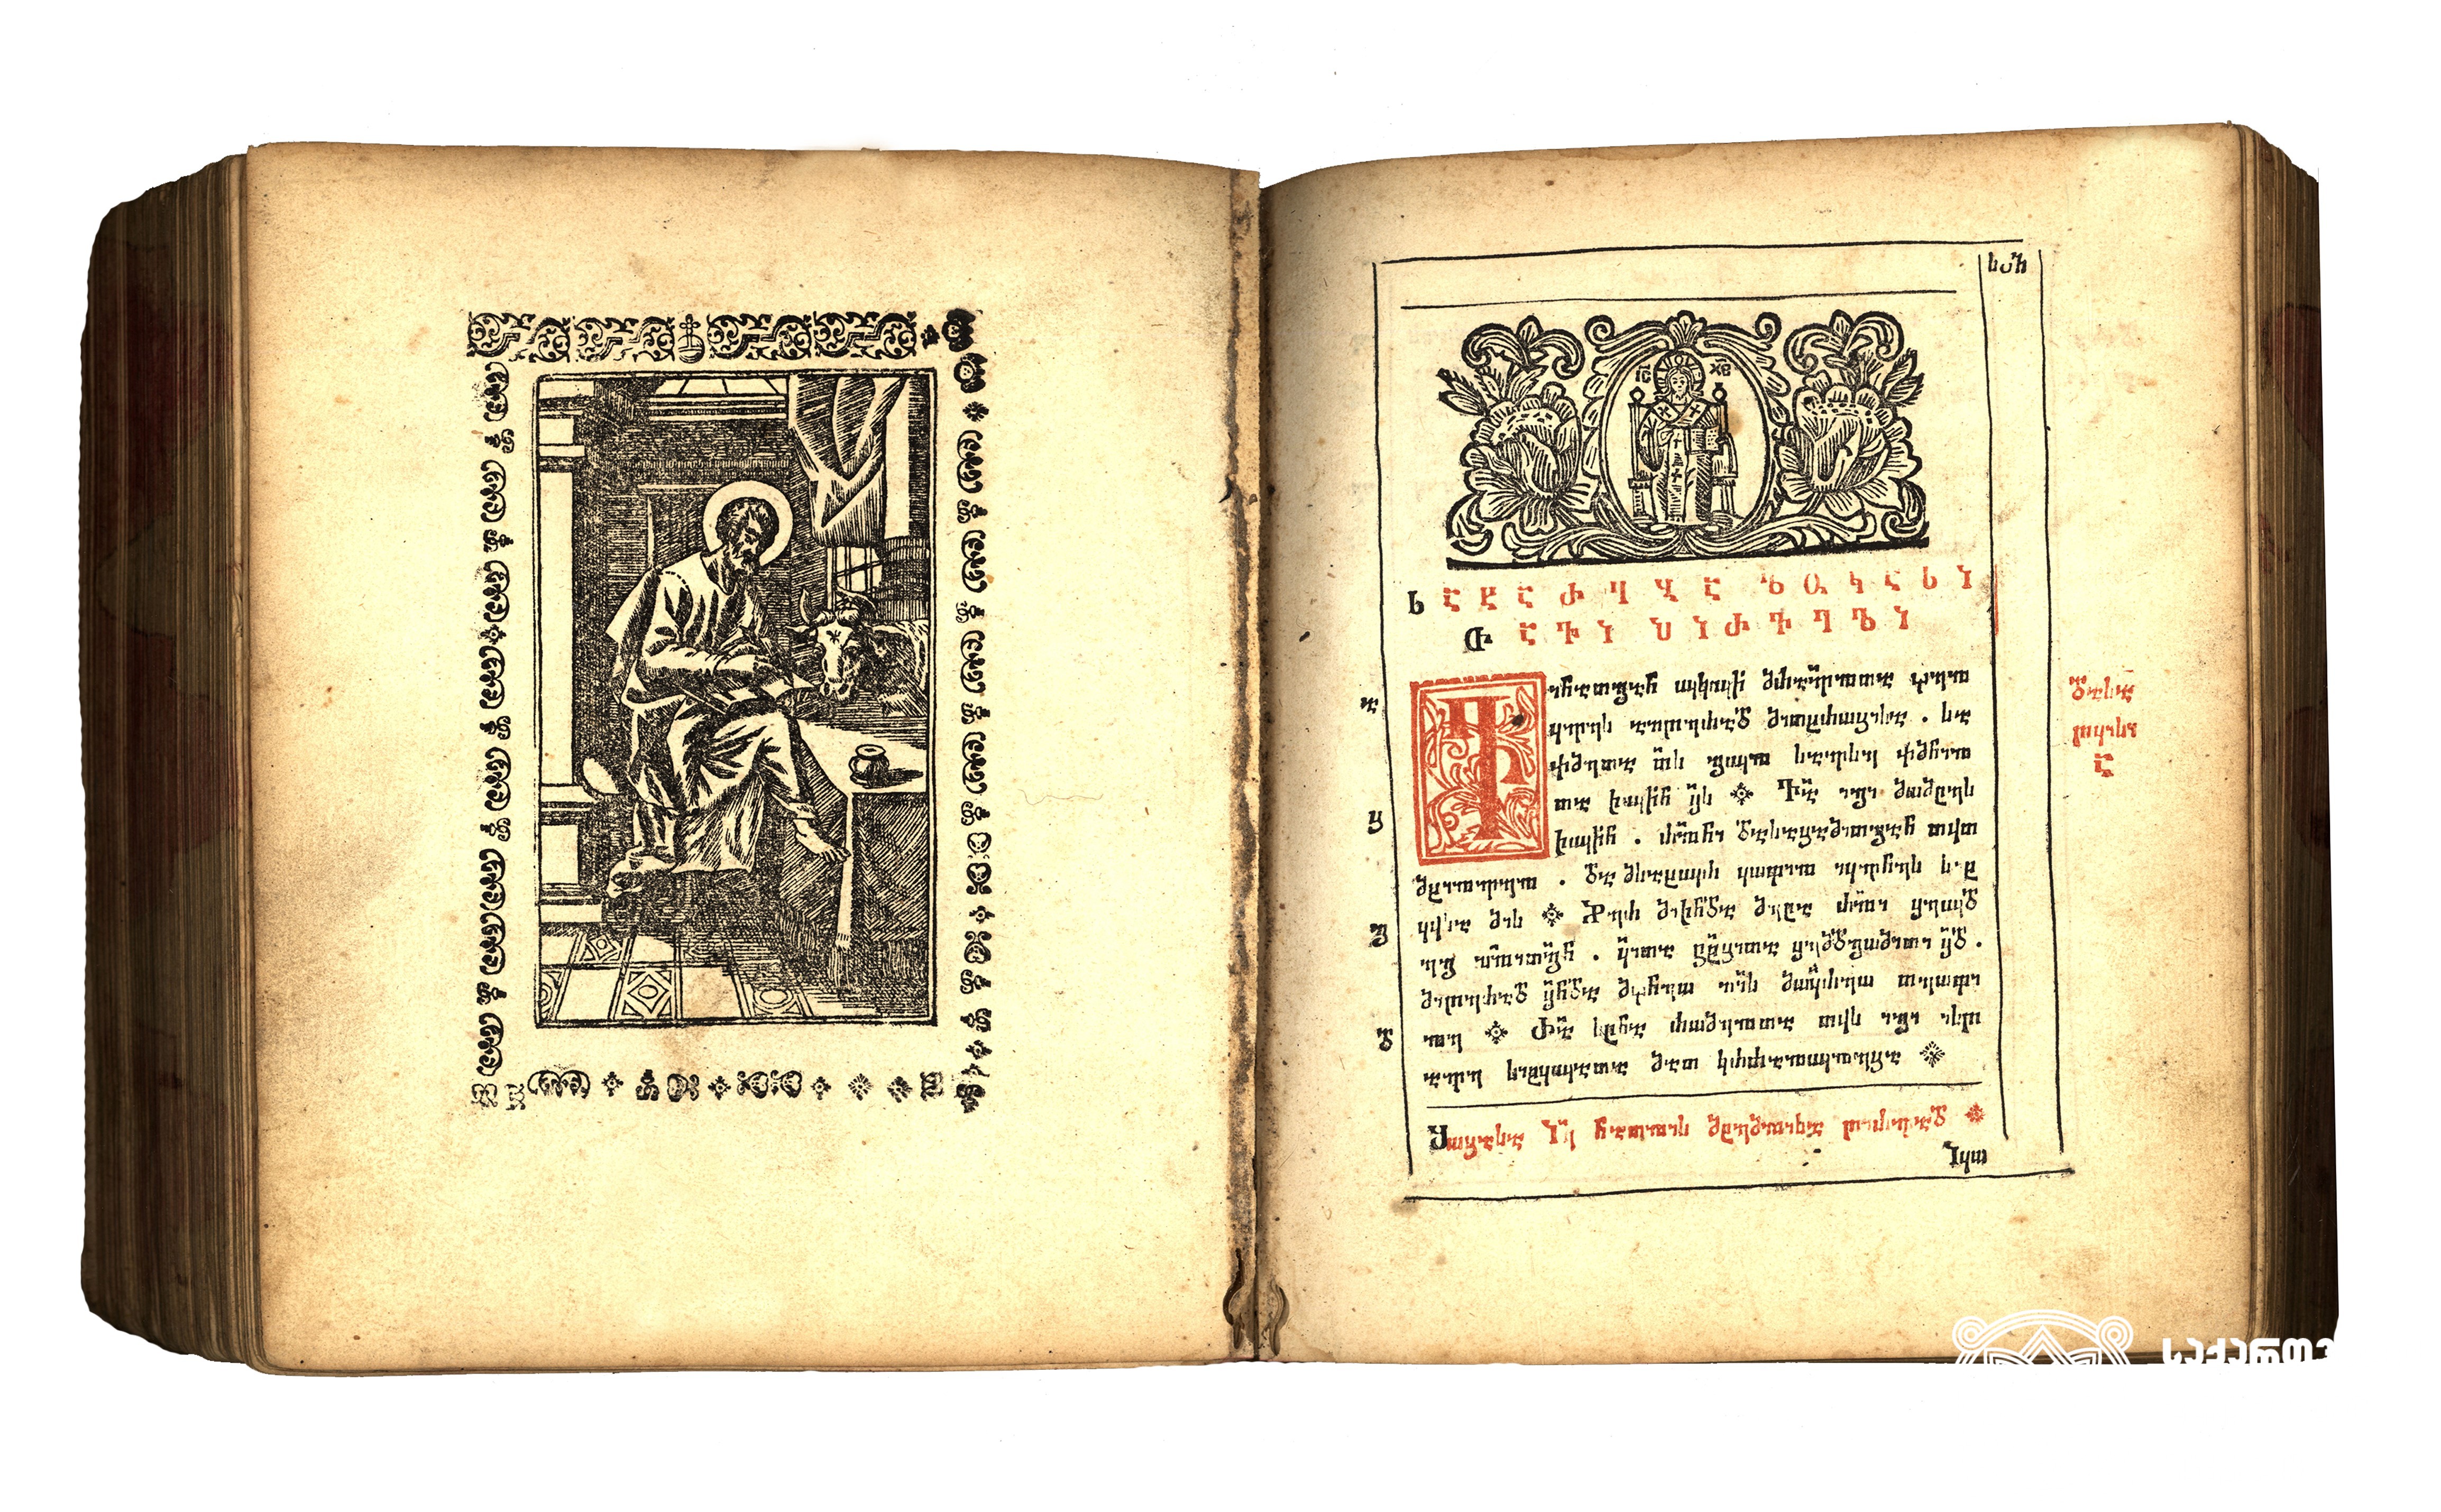 ლუკას სახარების დასაწყისი <br>
სახარება. მოსკოვი, 1739 <br>
იოსებ სამებელის სტამბა. მბეჭდავთა ზედამდგომელი: ქრისტეფორე გურამიშვილი <br>
Beginning of the Gospel of Luke <br>
Gospel. Moscow, 1739 <br>
Printing House of Ioseb Samebeli. Supervisor of the printers: Kristephore Guramishvili